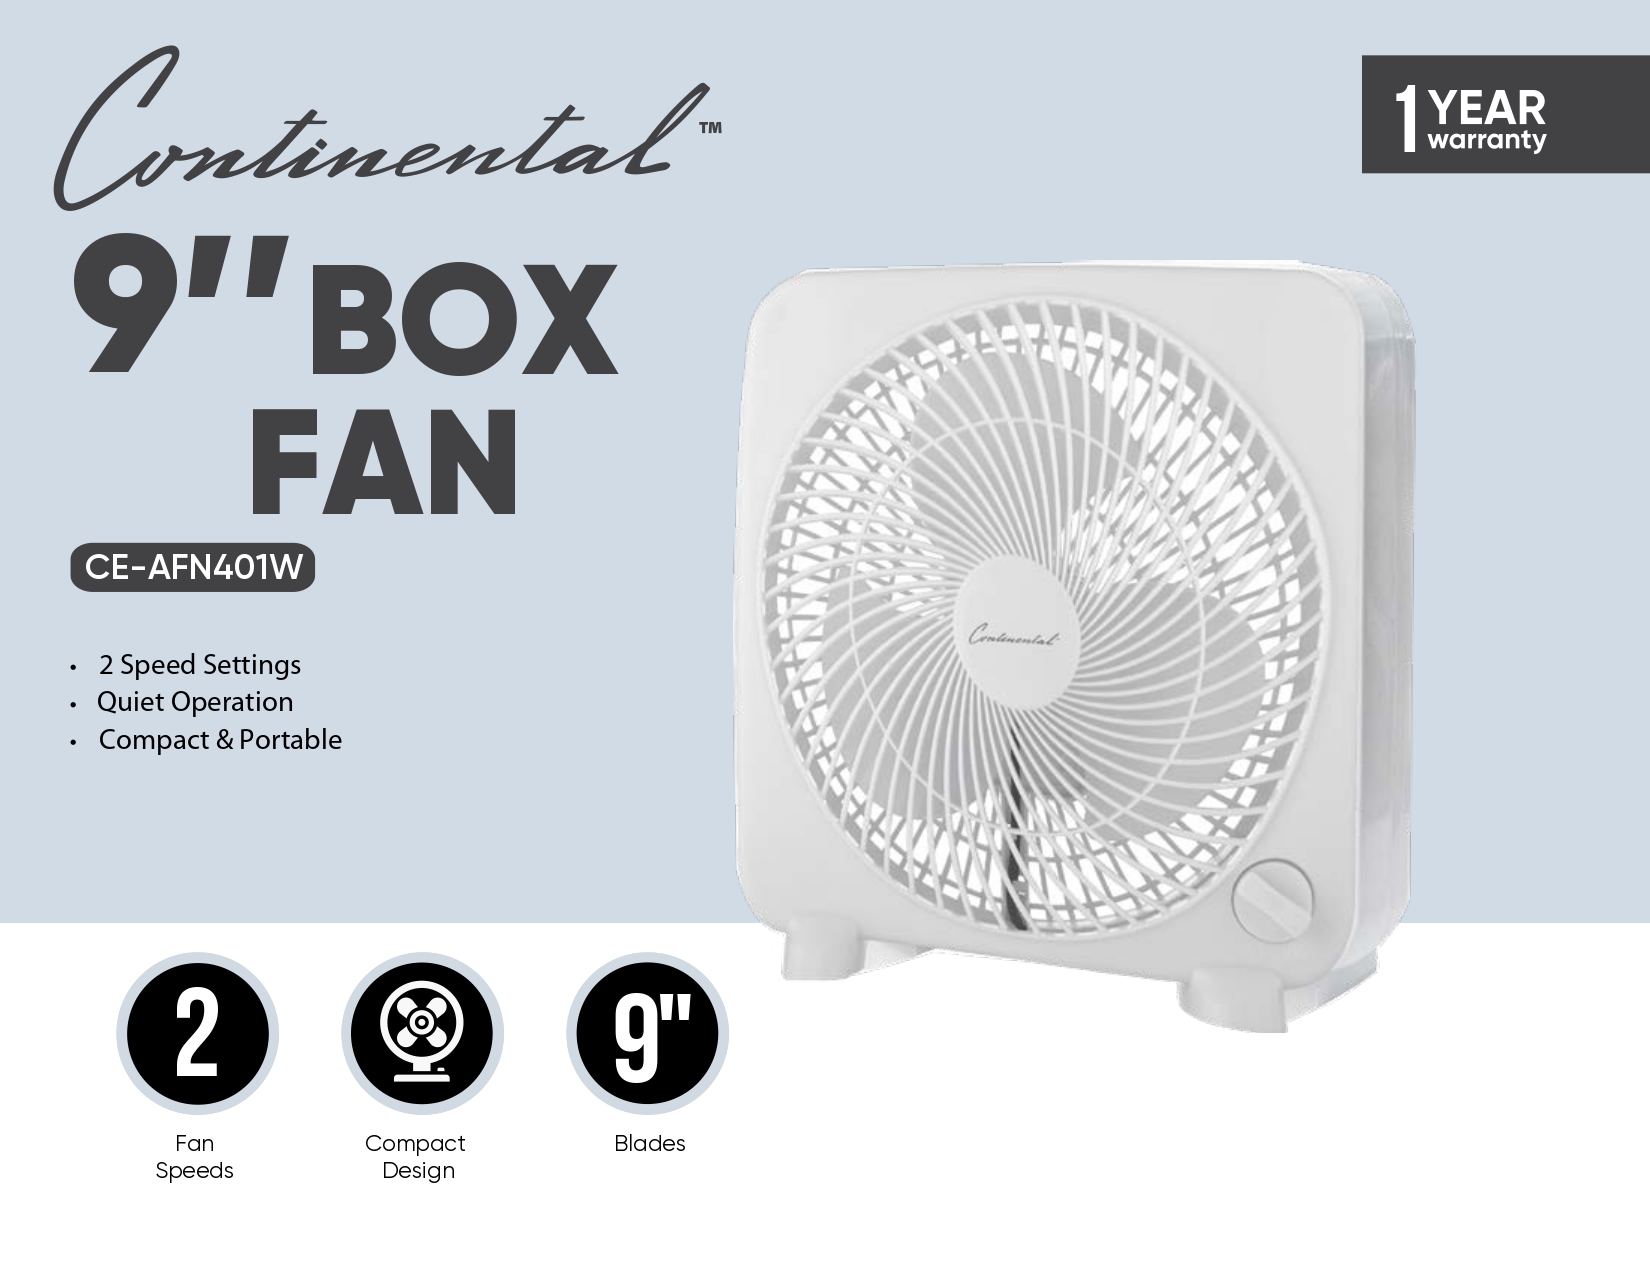 9" Box Fan